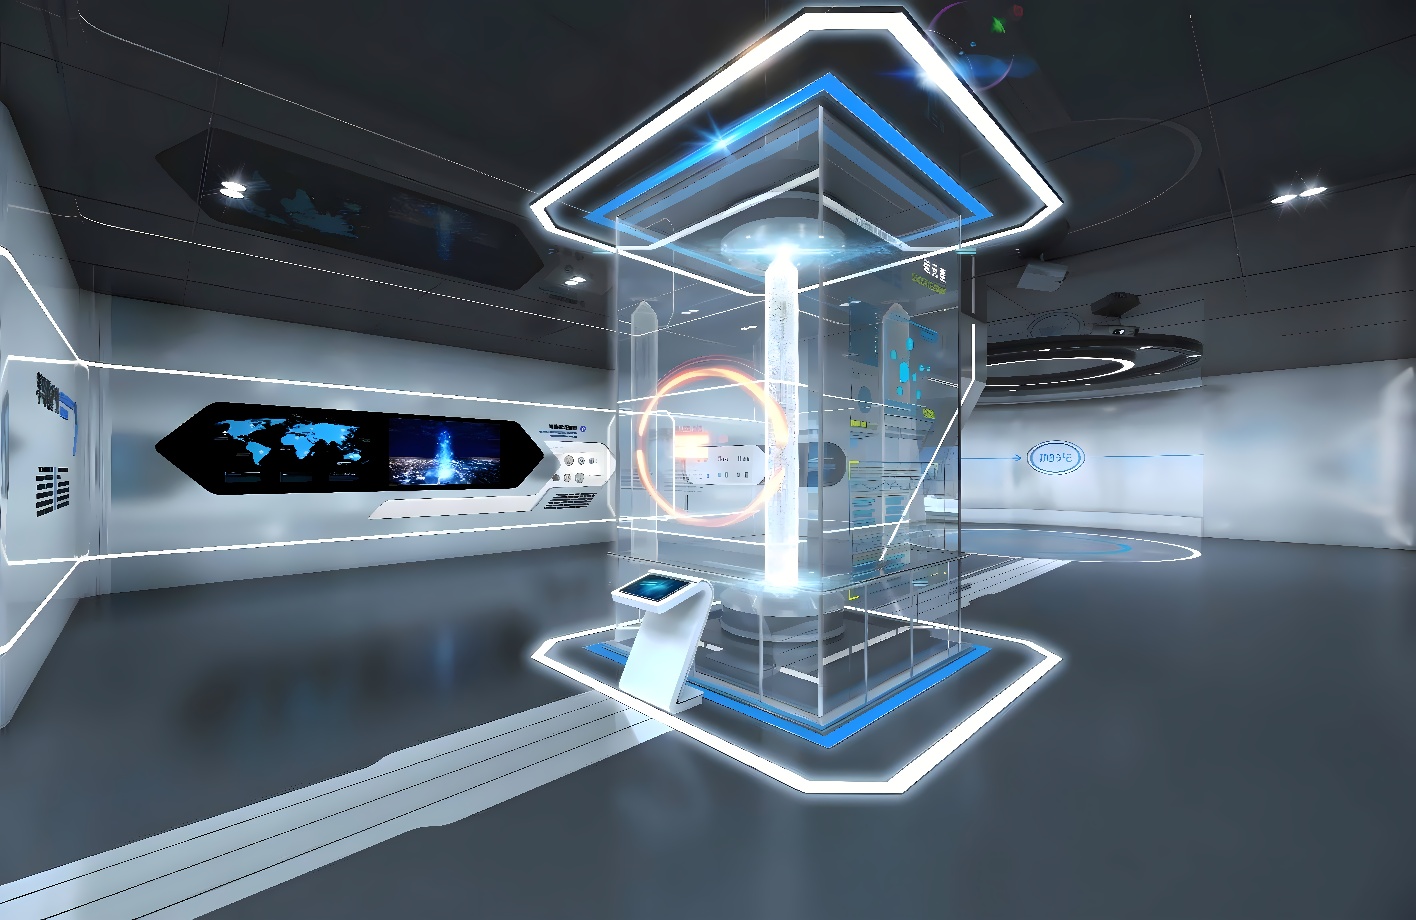 这是一张展示现代科技感室内设计的图片，中心有类似全息投影的装置，周围布置有屏幕和未来风格的装饰。